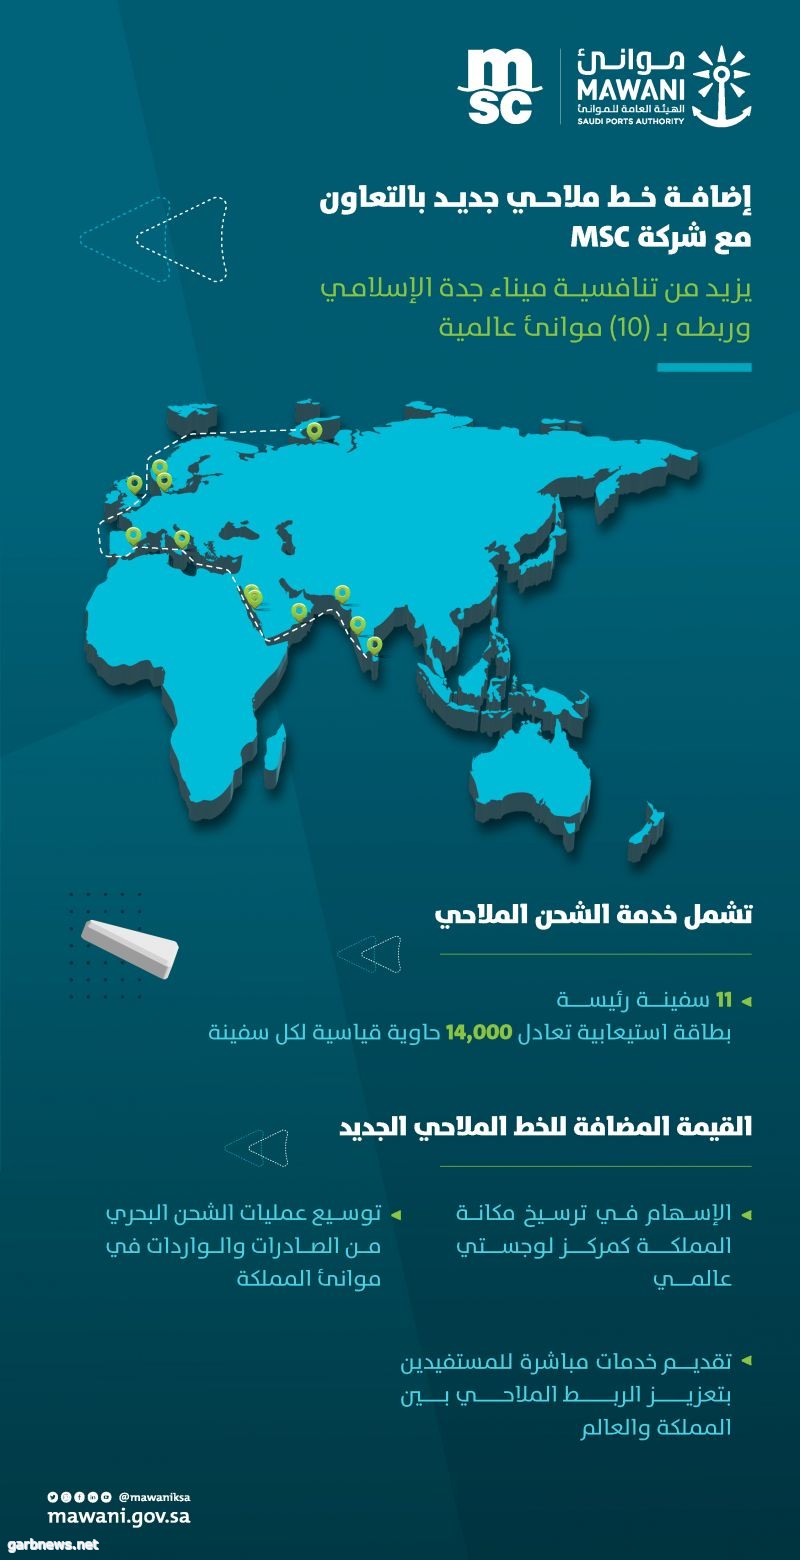 موانئ: إضافة خط ملاحي جديد بالتعاون مع شركة "MSC" في ميناء جدة الإسلامي